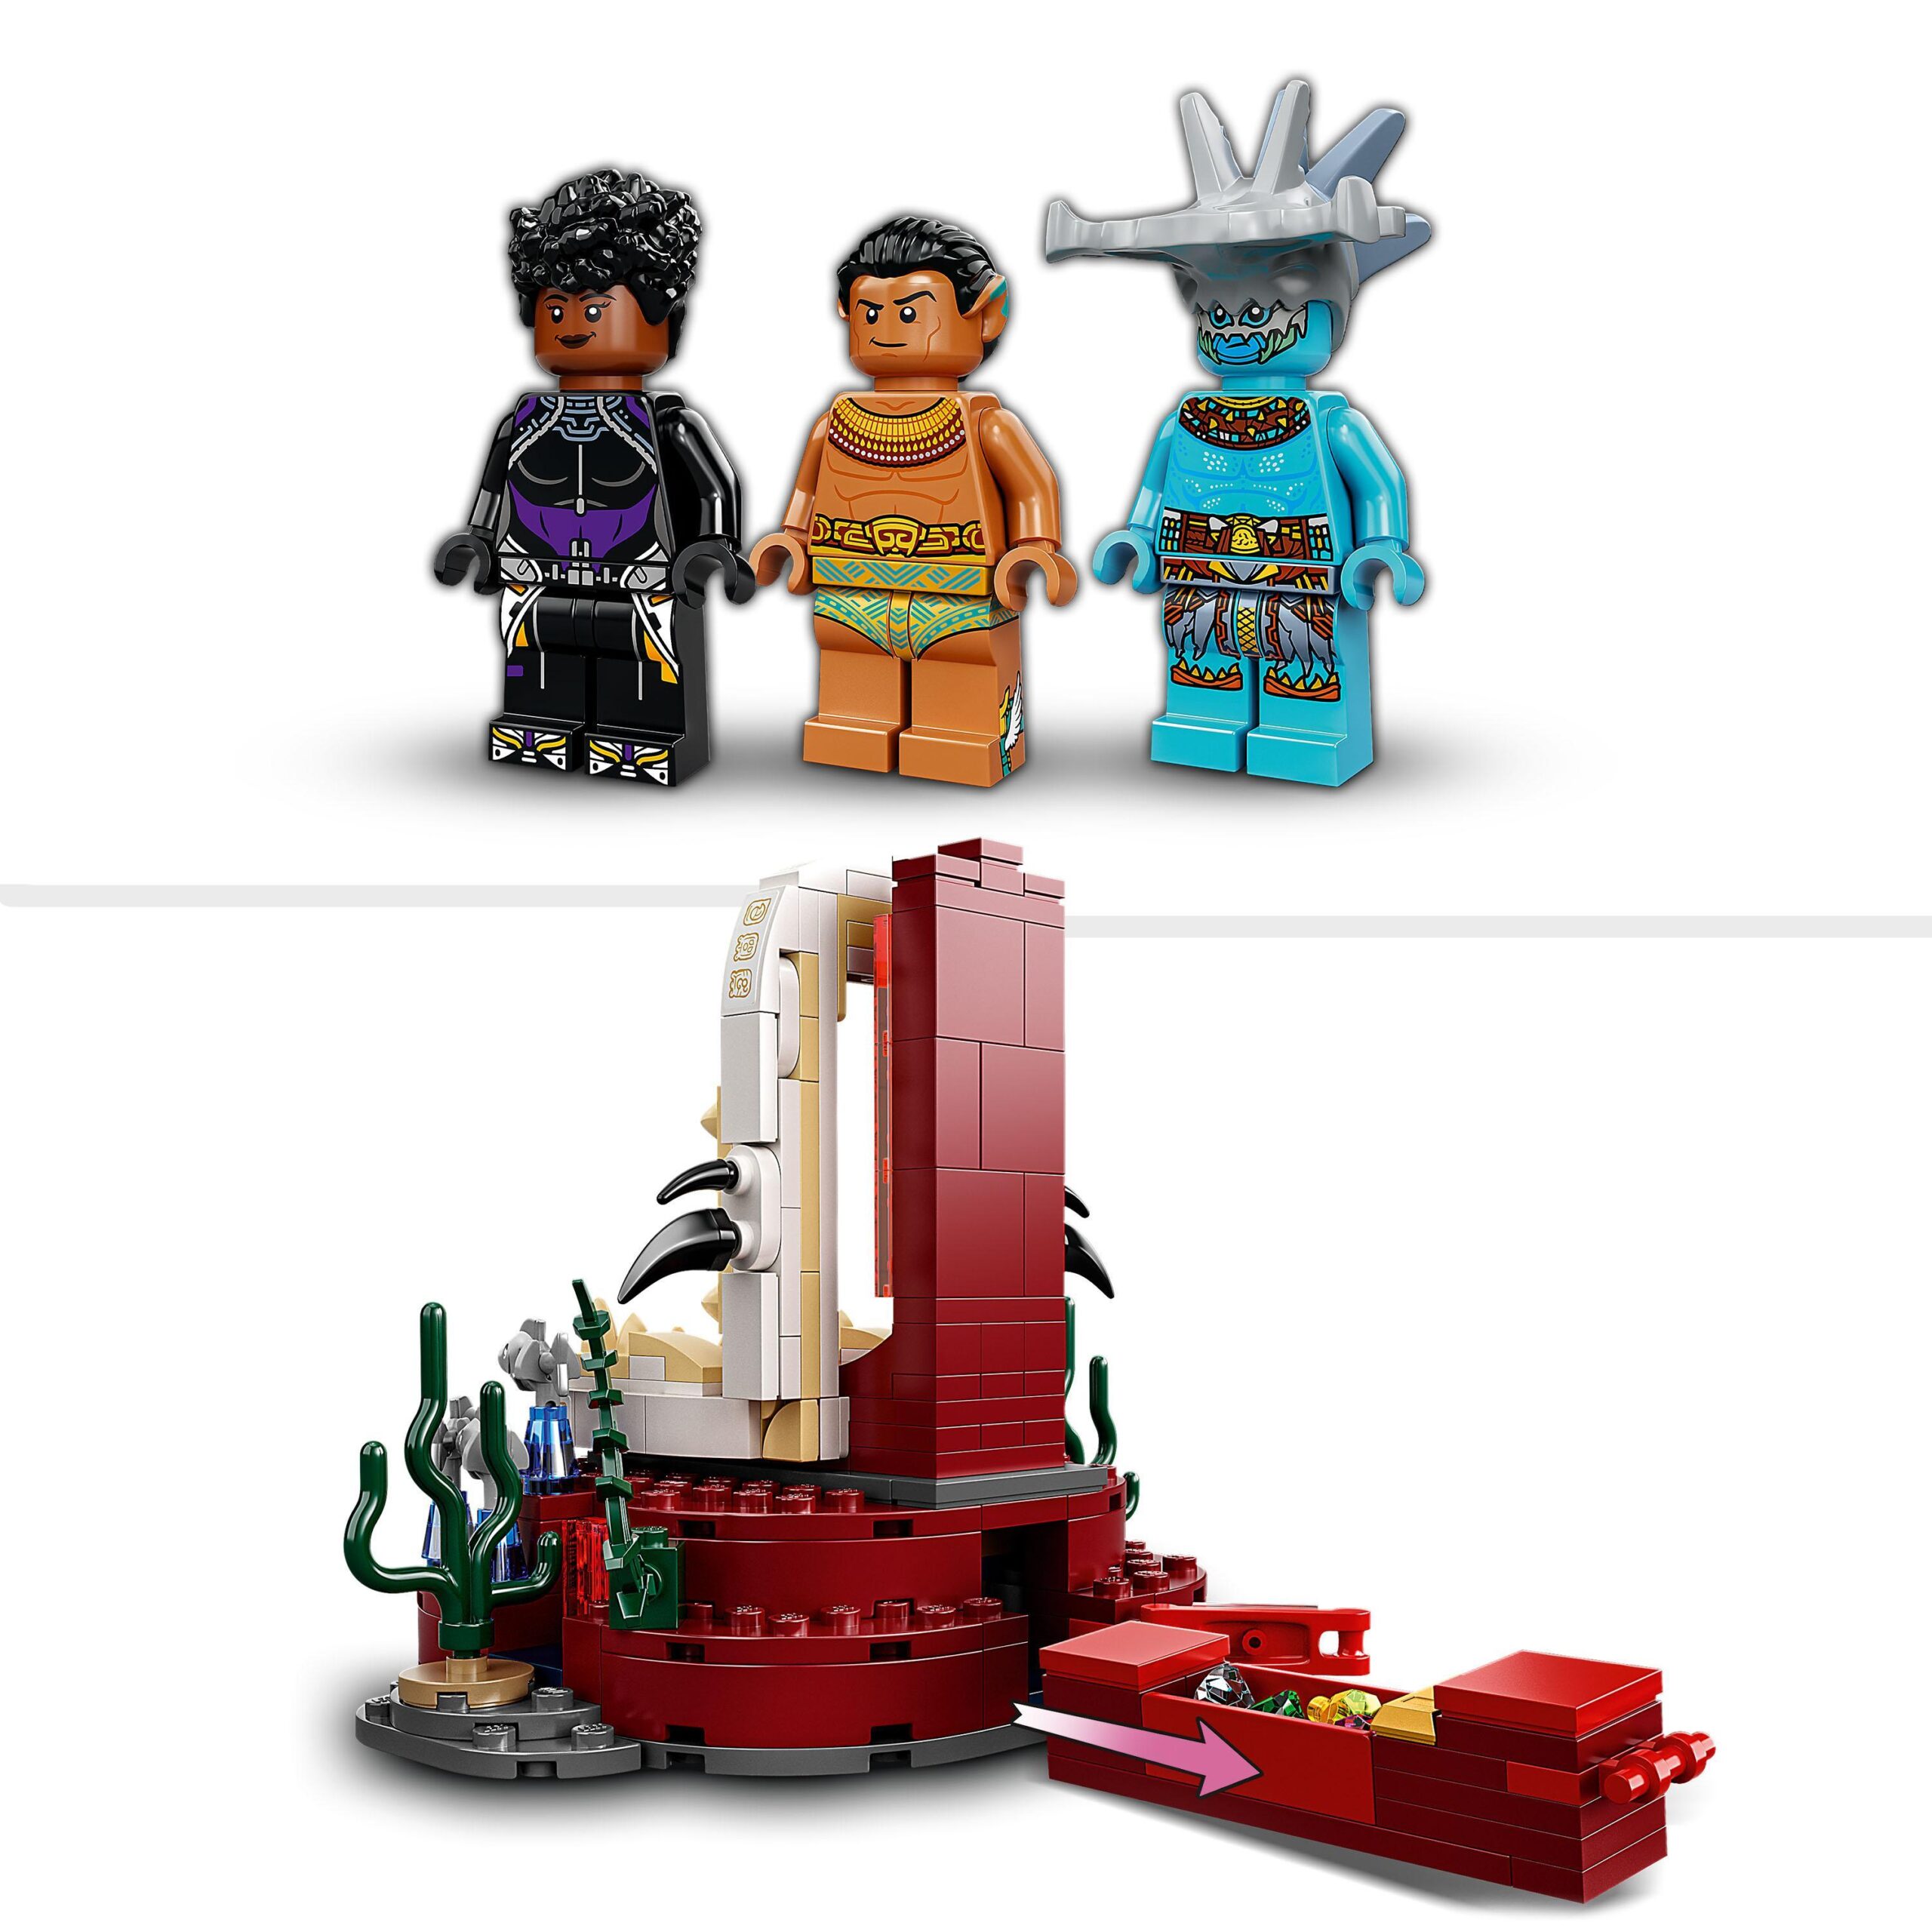 Lego marvel 76213 la stanza del trono di re namor, film supereroi black panther, sottomarino giocattolo, giochi per bambini - LEGO SUPER HEROES, Avengers